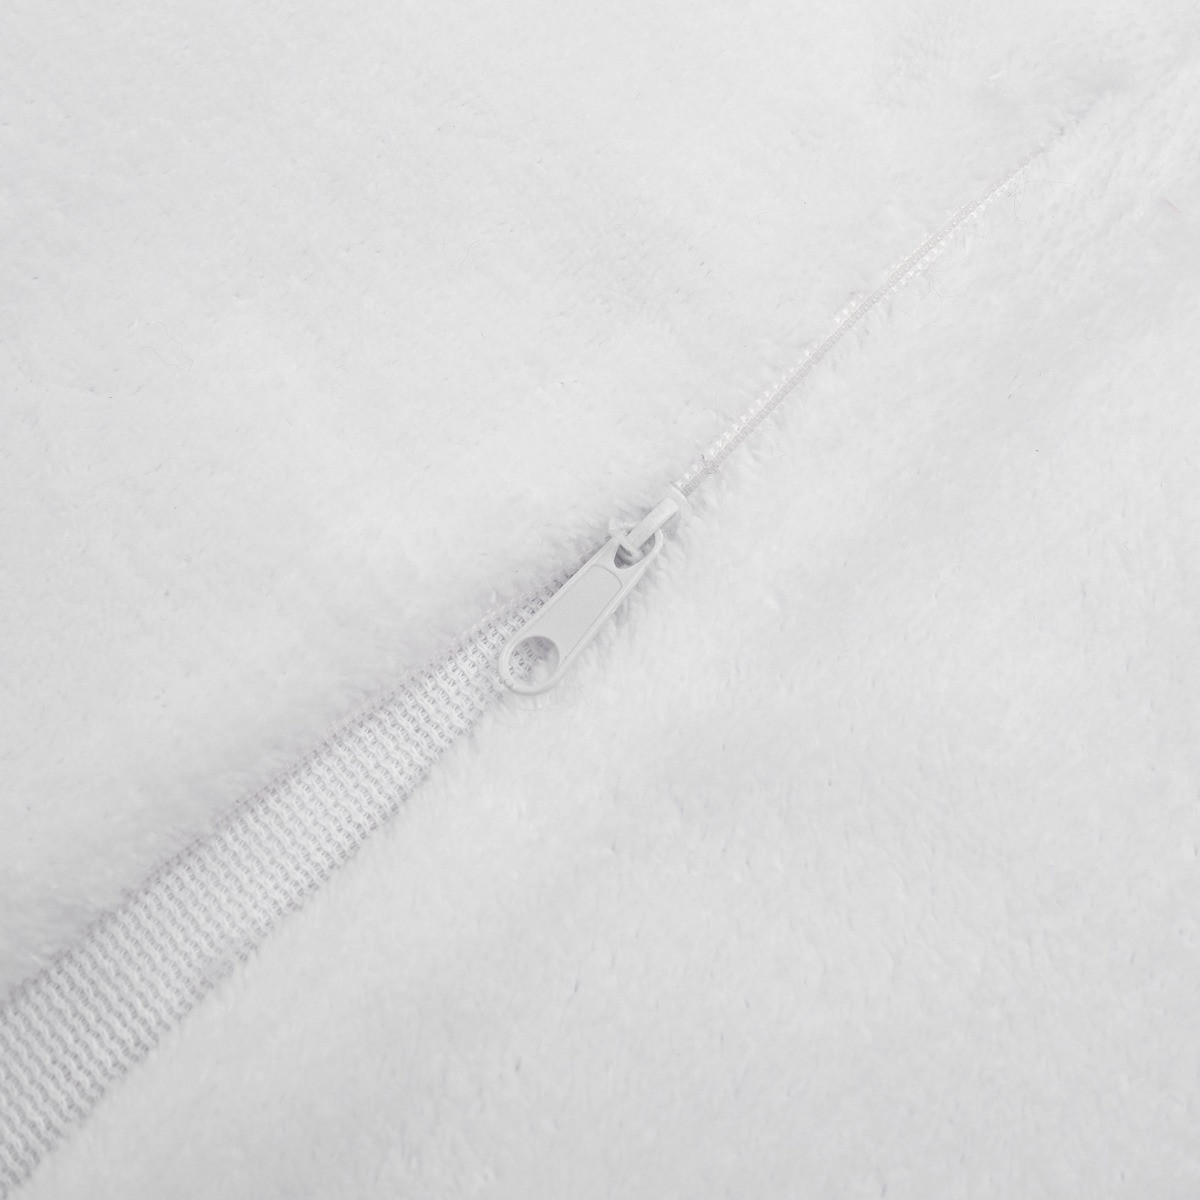 Sienna 2 Pack Faux Mongolian Fur Cushion Covers, White - 55 x 55cm>